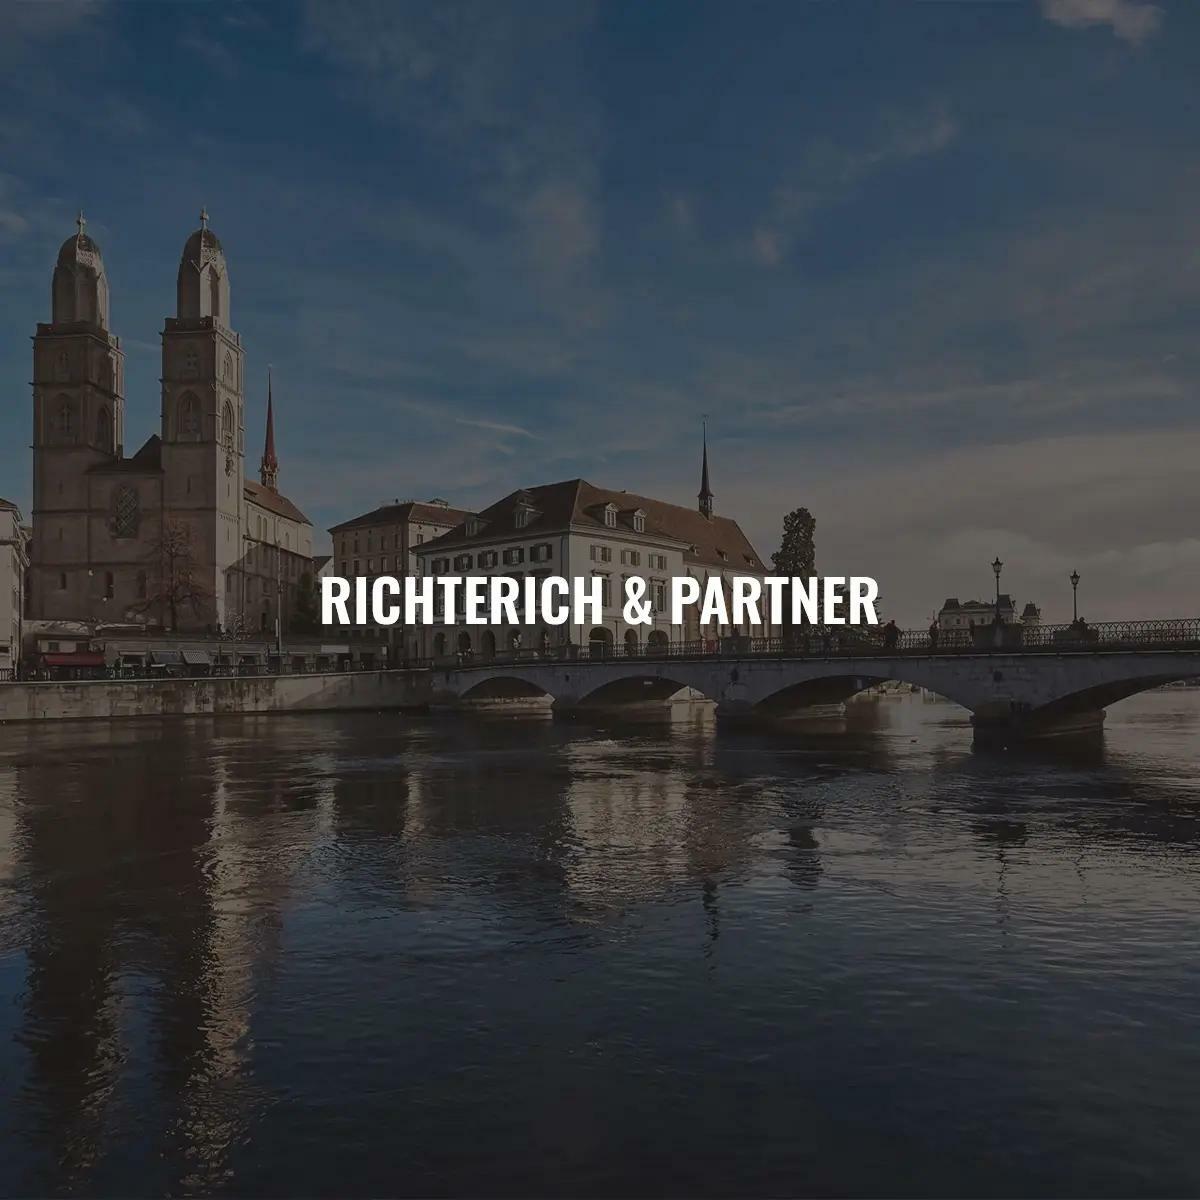 The new website for Richterich & Partner AG